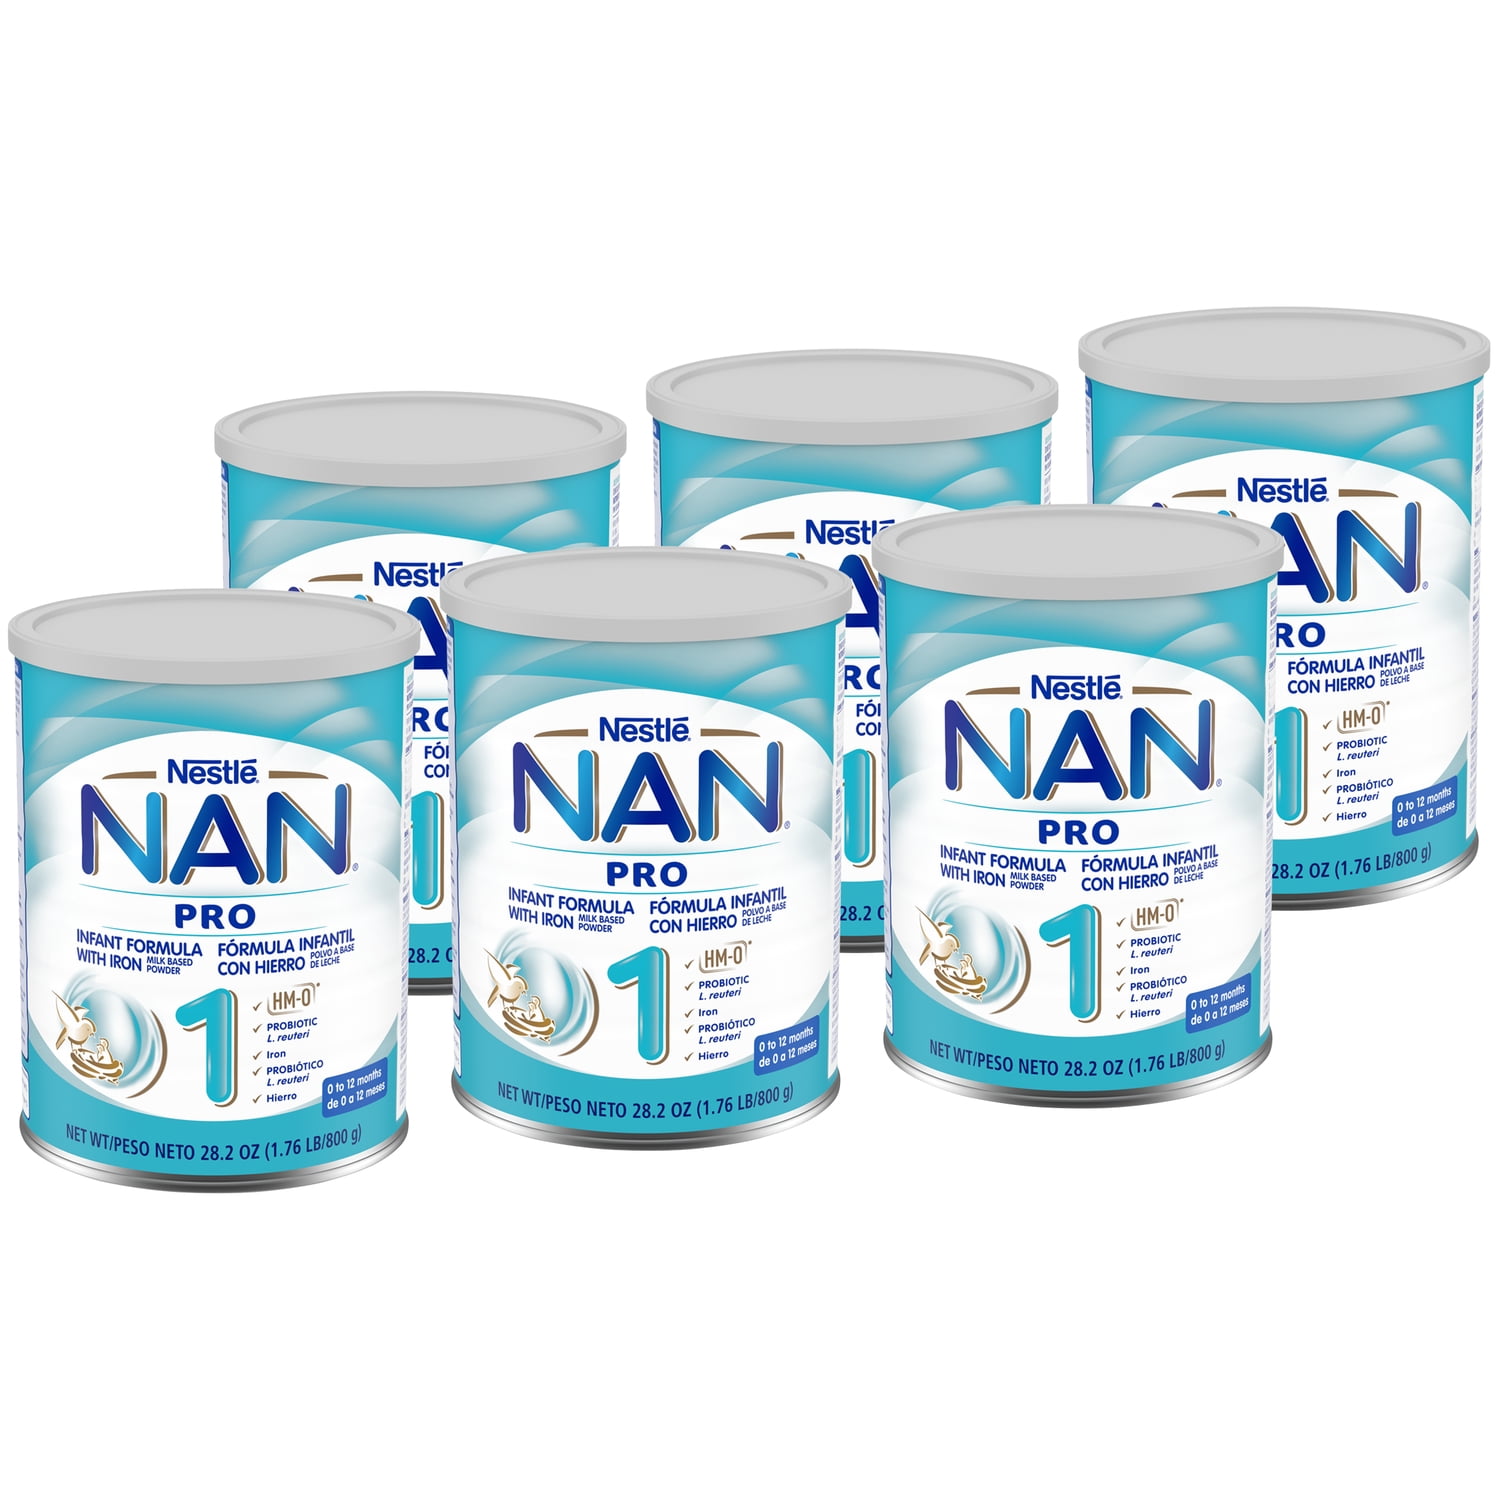 Intacto Año tanque Nestlé NAN Pro 1 Powder Infant Formula, 28.2 oz, Can, (Pack of 6), Iron -  Walmart.com